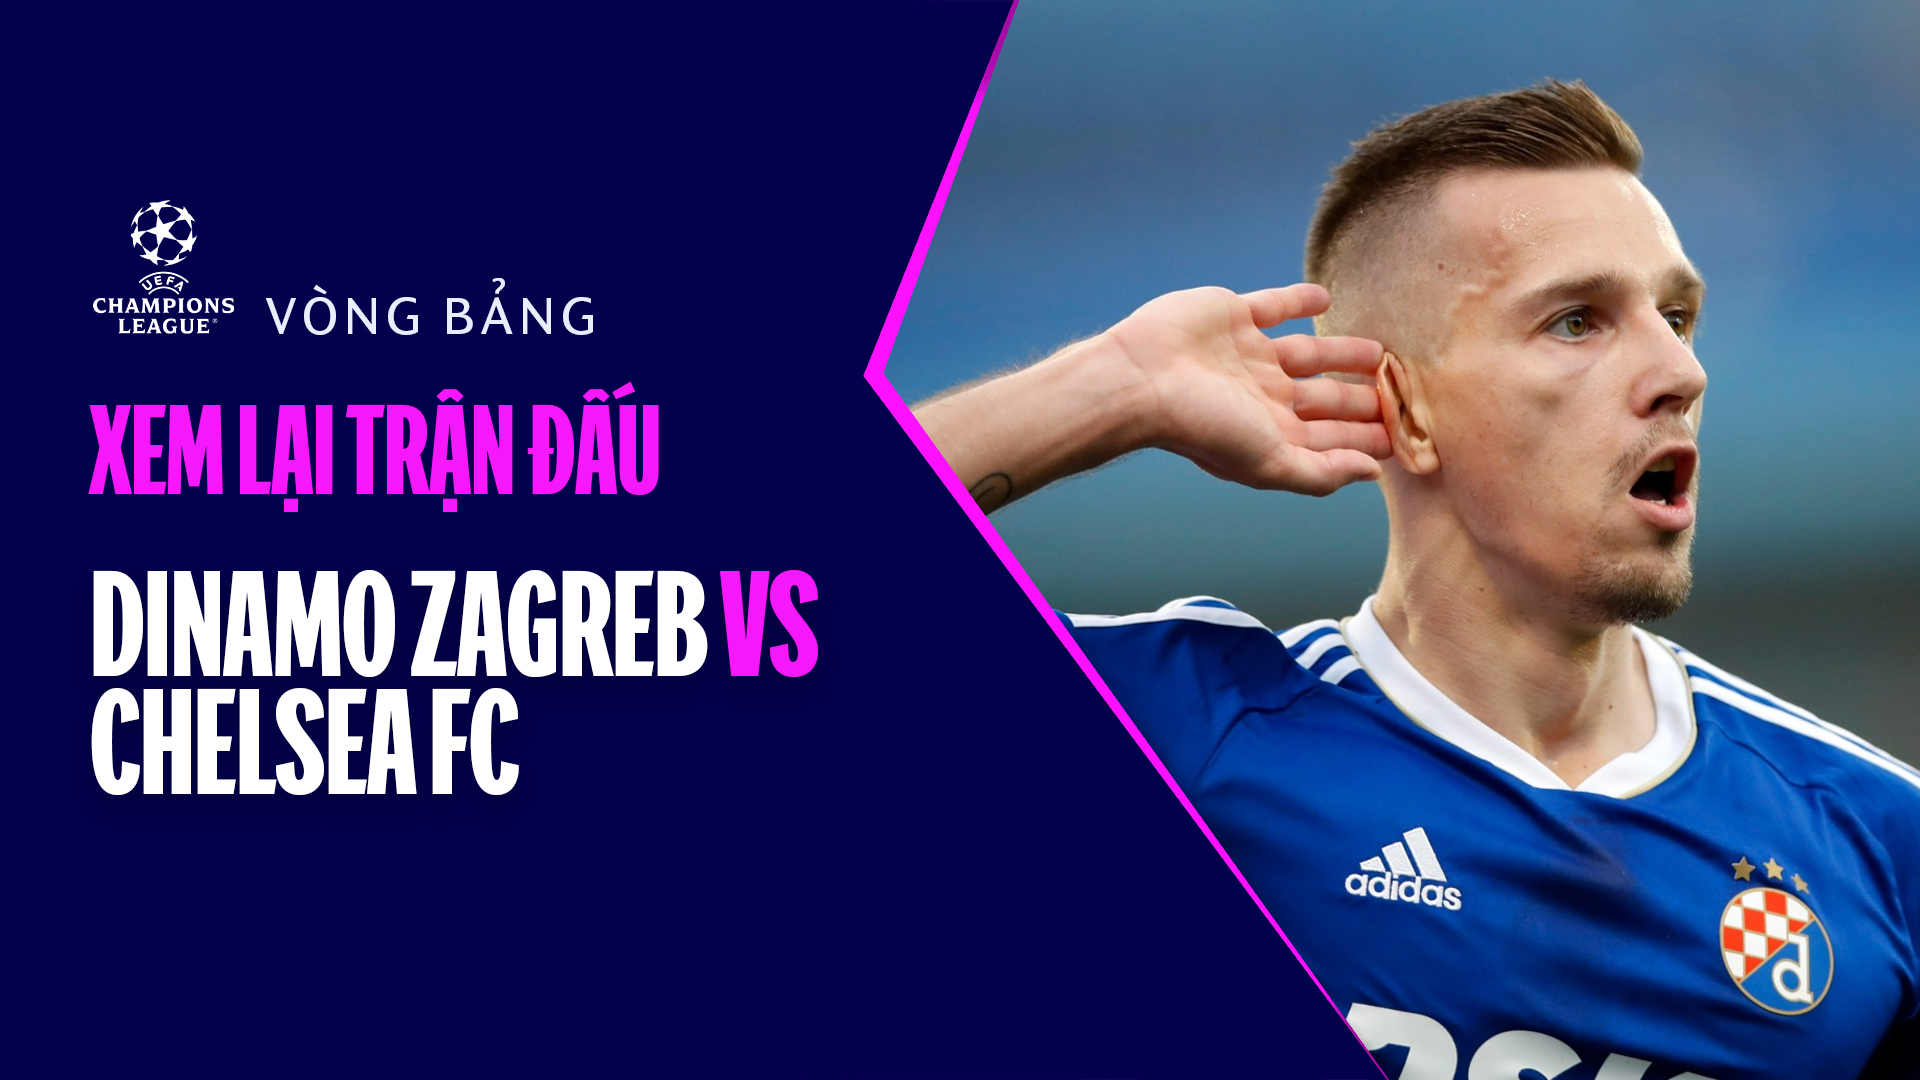 Dinamo Zagreb - Chelsea FC - Champions League